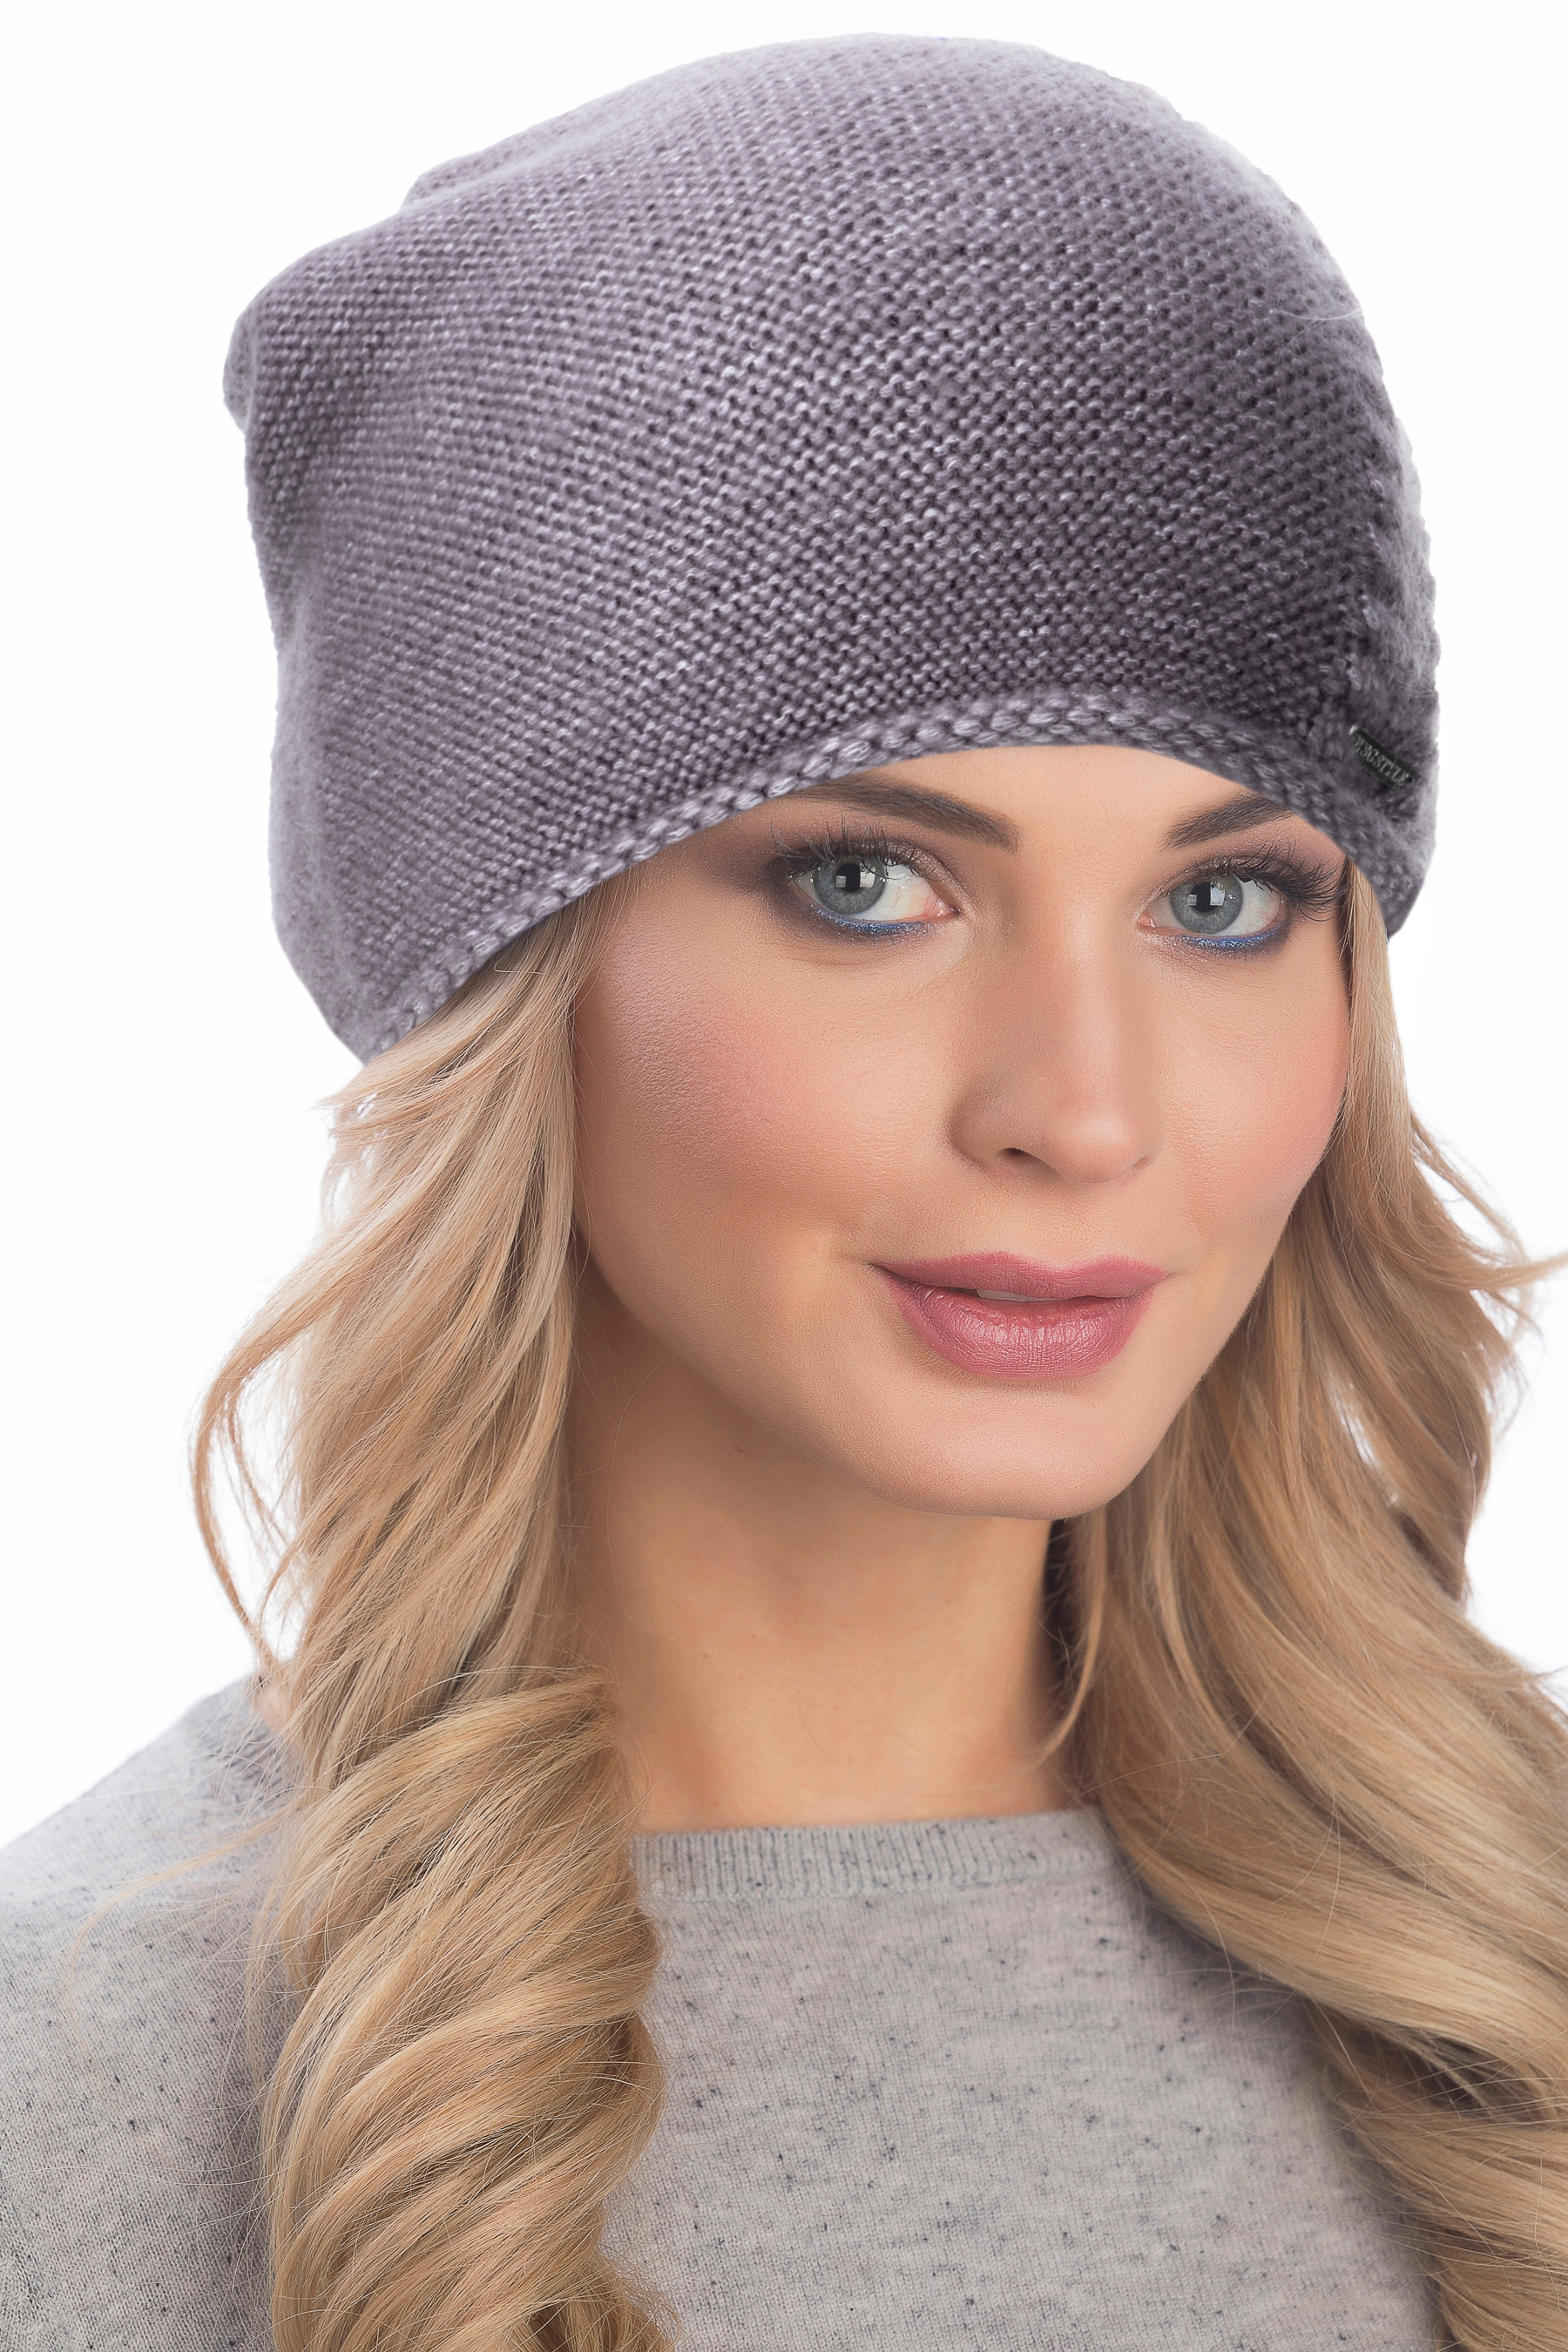 Купить женскую вязаную шапку для зимы с доставкой в интернет-магазине эталон62.рф